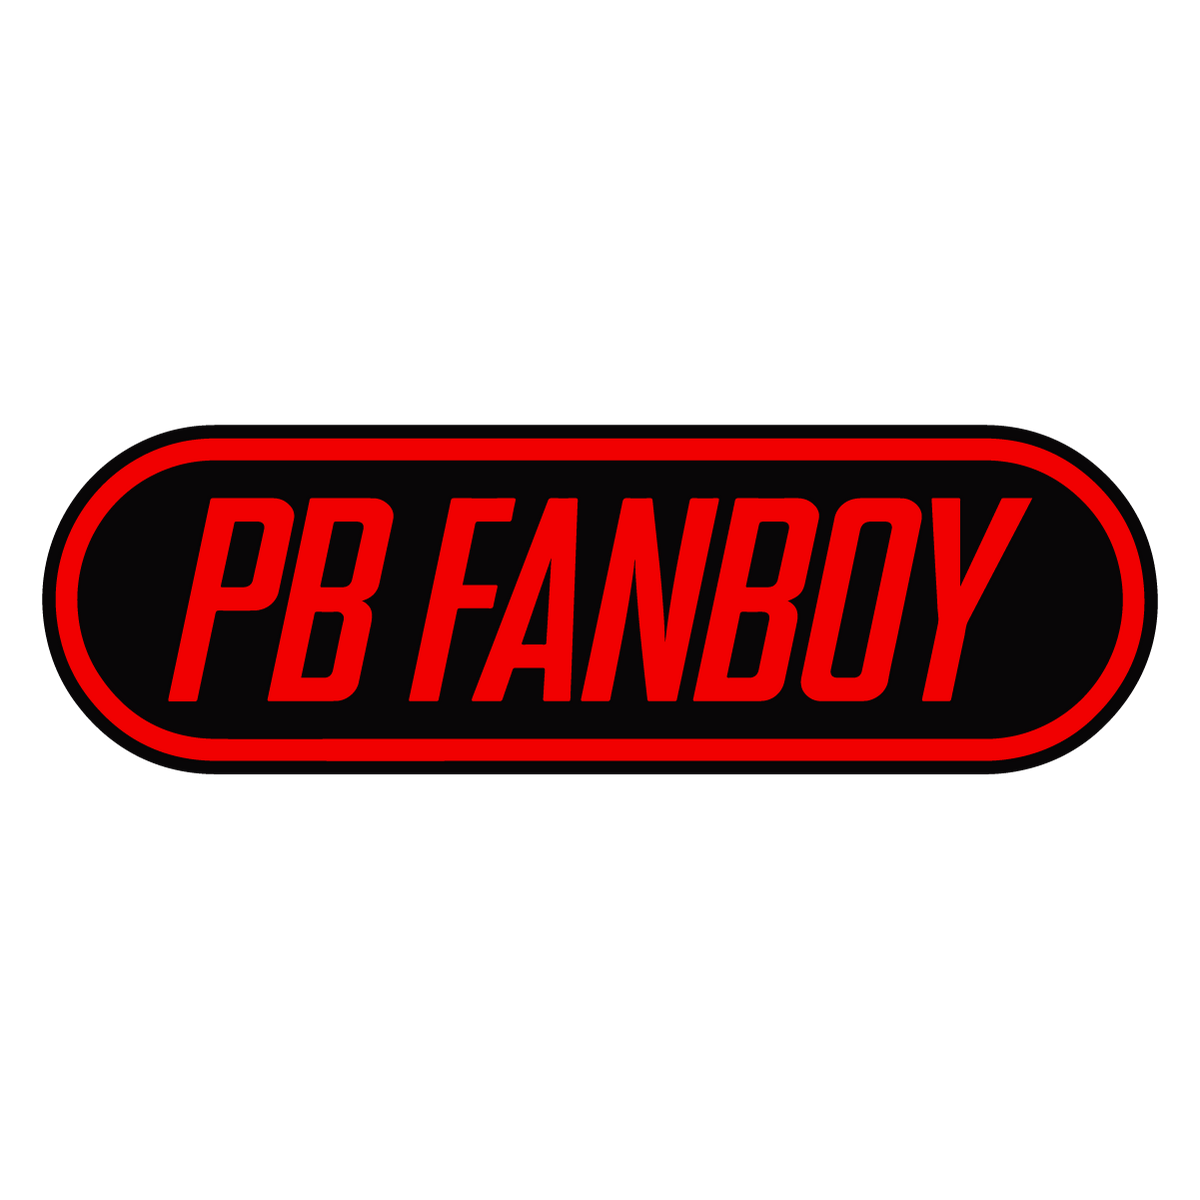 PB Fanboy